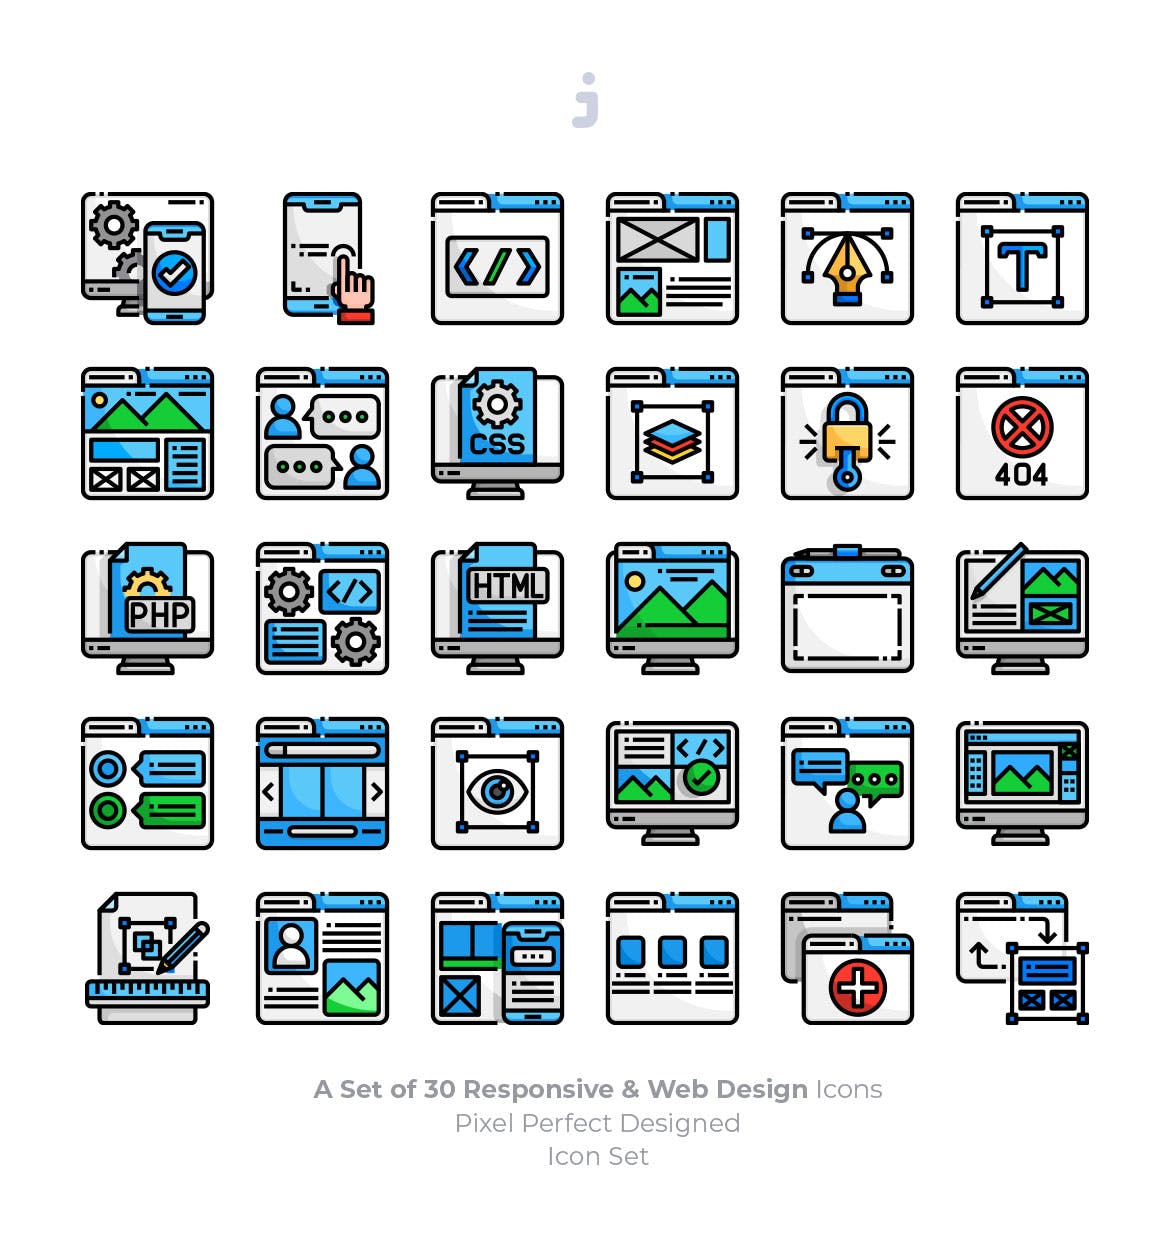 30枚彩色响应式网站设计矢量蚂蚁素材精选图标 30 Responsive & Web Design Icons插图(1)